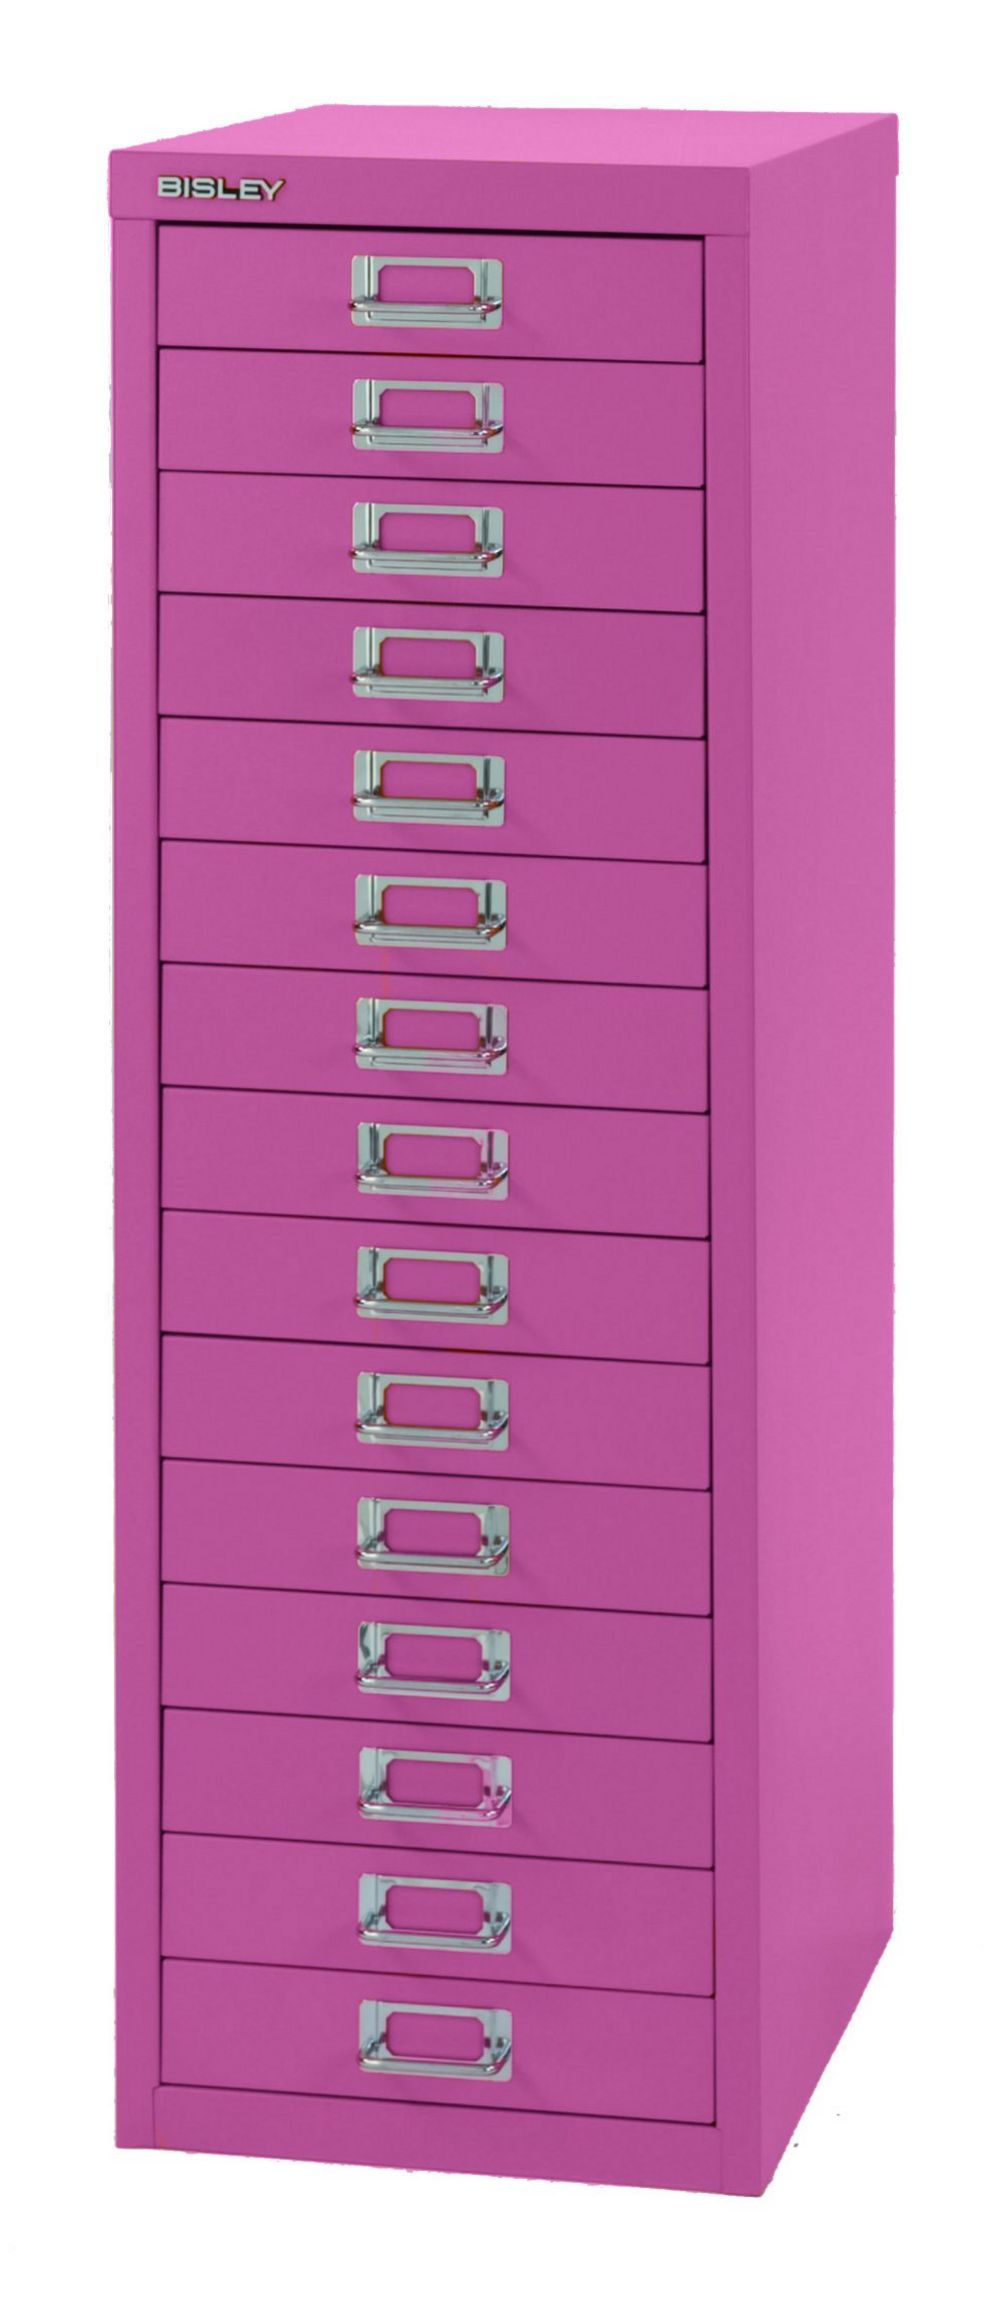 pinkfarbener 15 Schubladen-Metallschrank